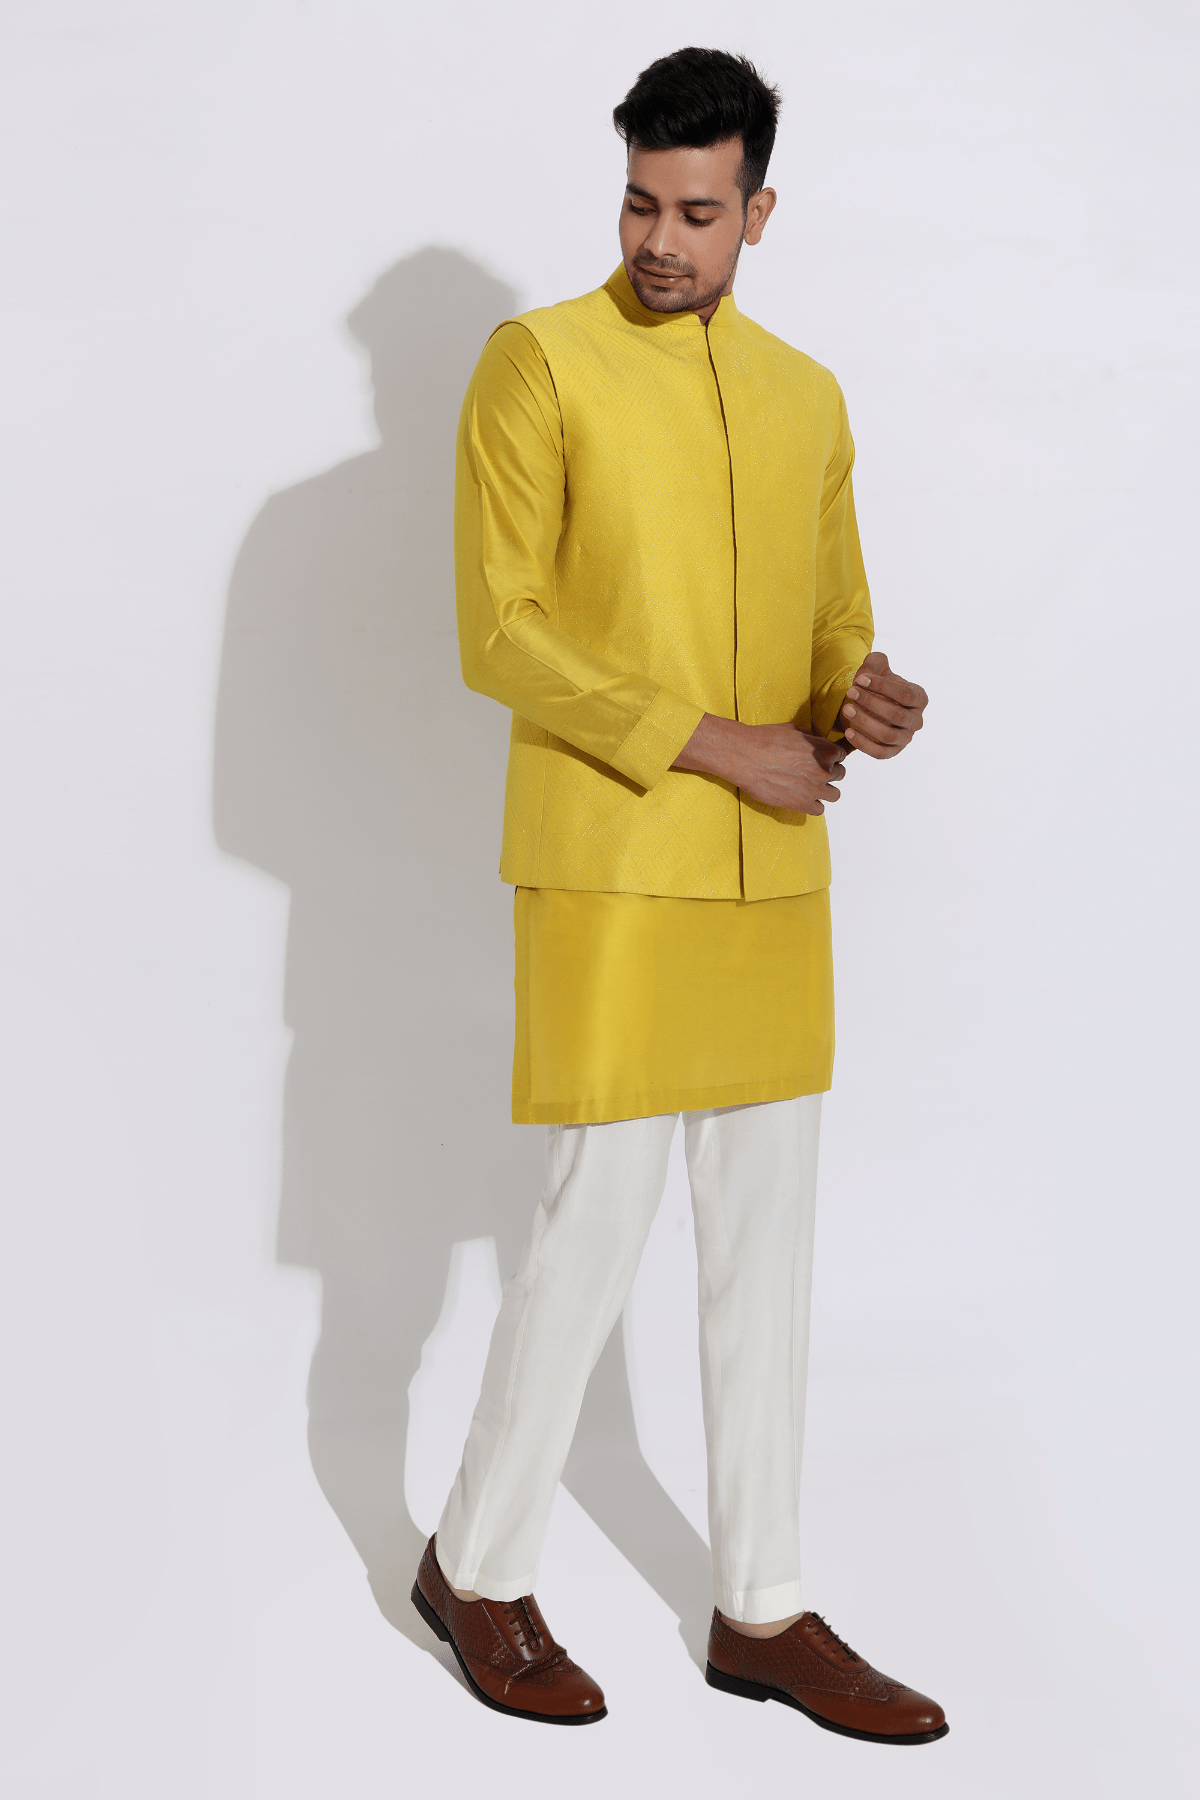 Yellow bandi jacket,yellow kurta,aligarhi - Kunal Anil Tanna